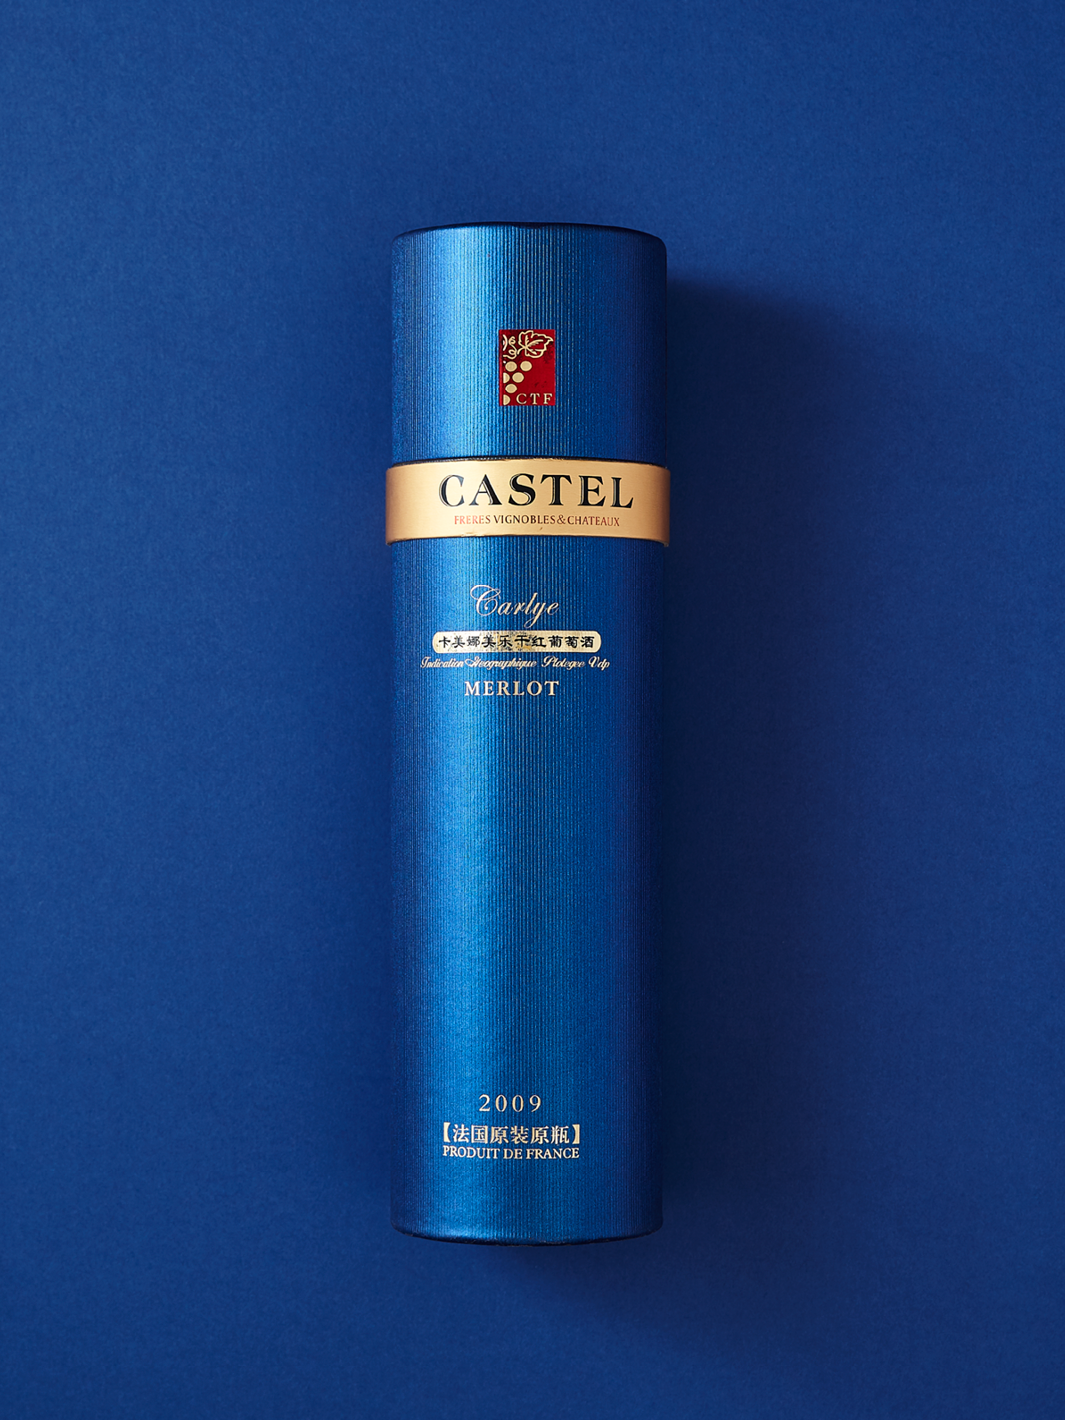 Blue cardboard tube packaging for Castel beverages.